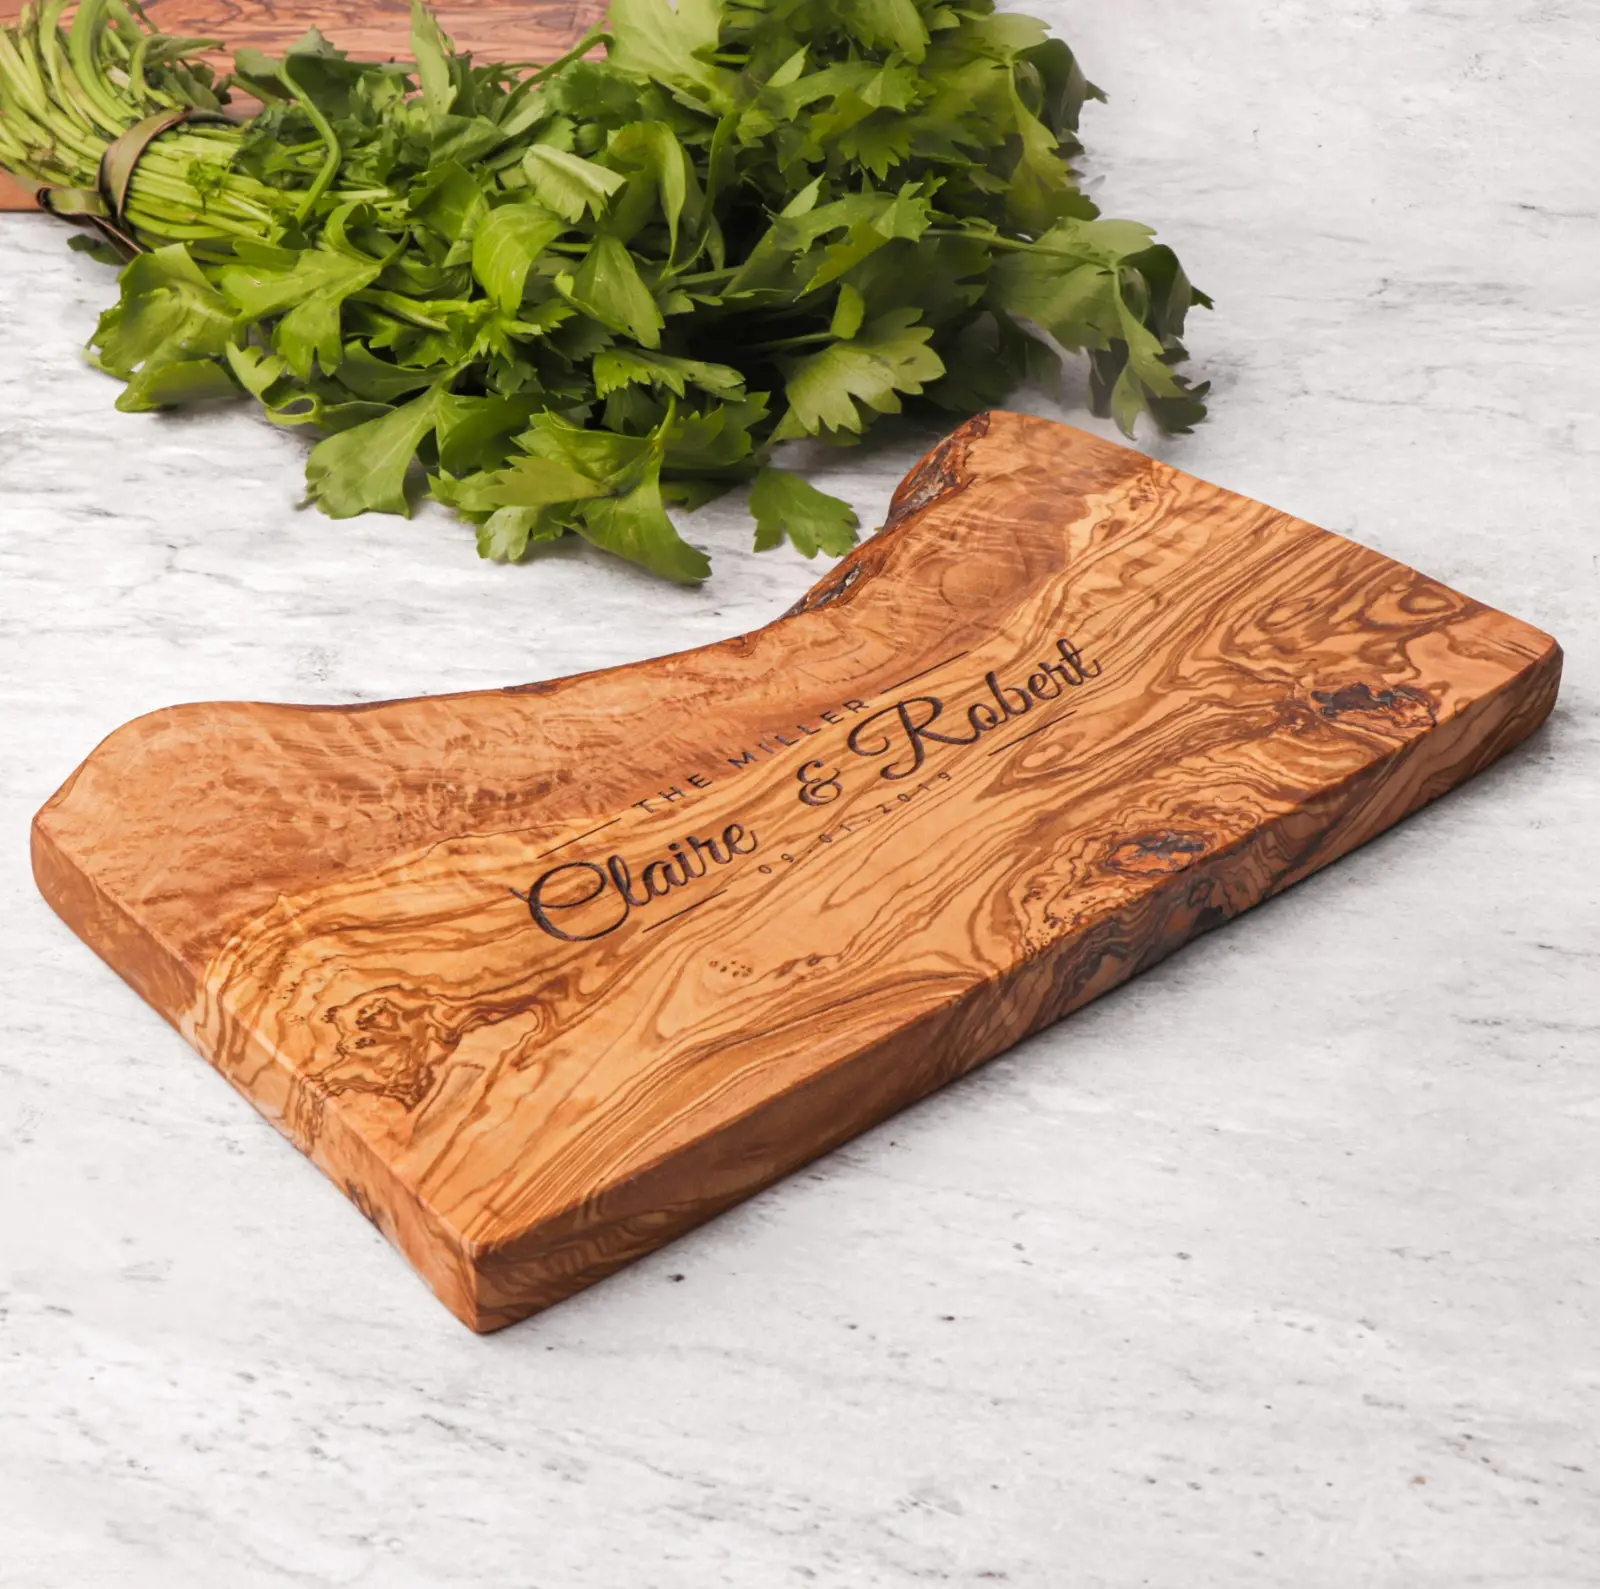 Tagliere tagliere legno di oliva: Premium legno rettangolo sostenibile singolo pezzo tavola di legno fatto a mano